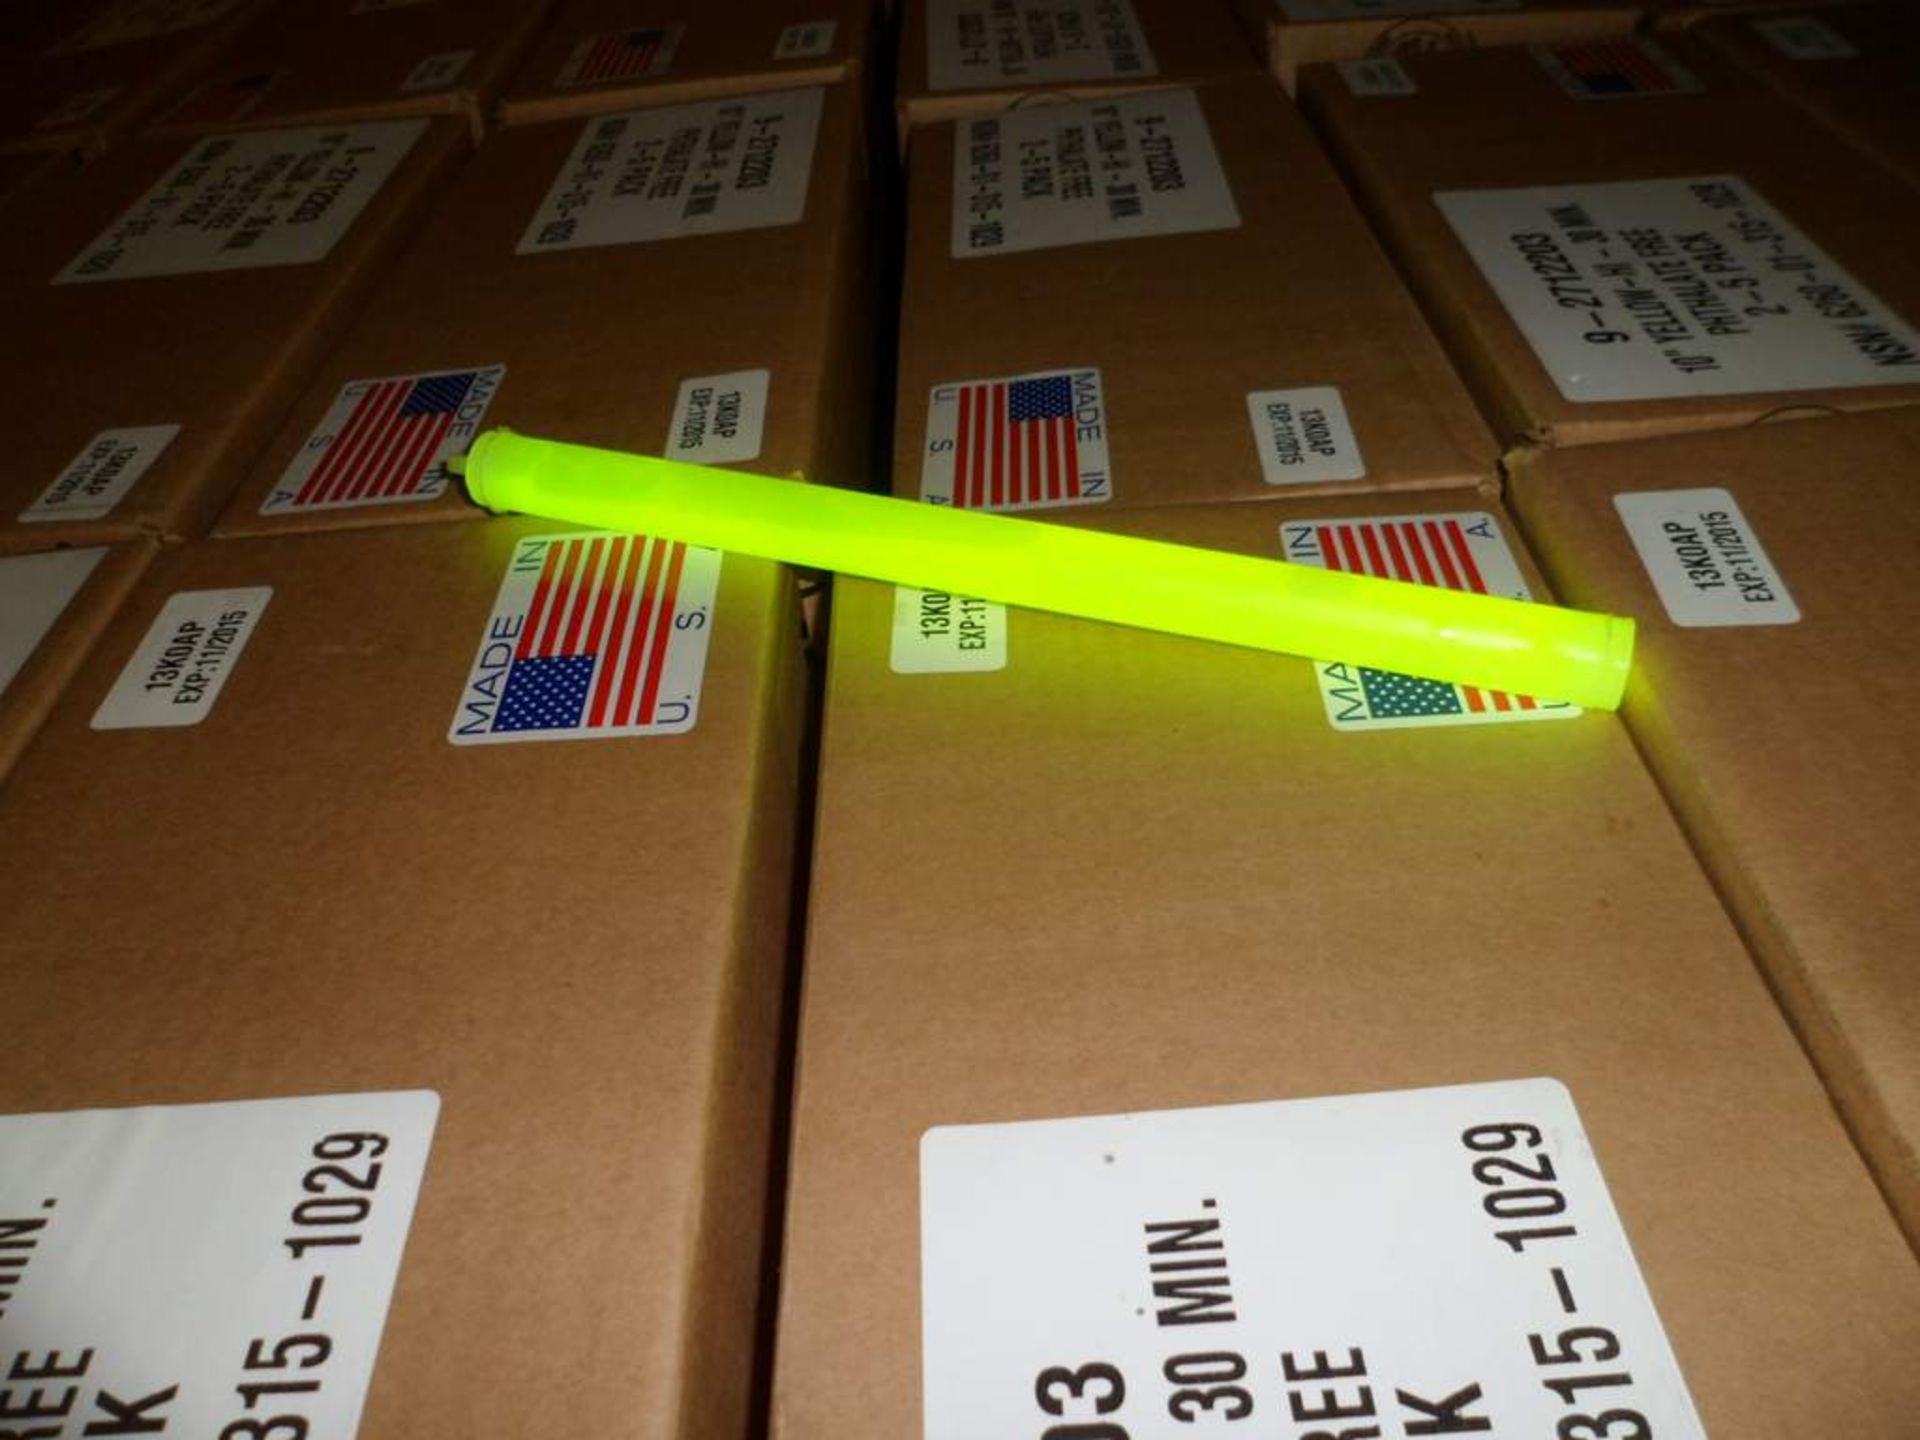 Cyallum light yellow glow sticks 10" 84 boxes 10 per box - Image 2 of 2